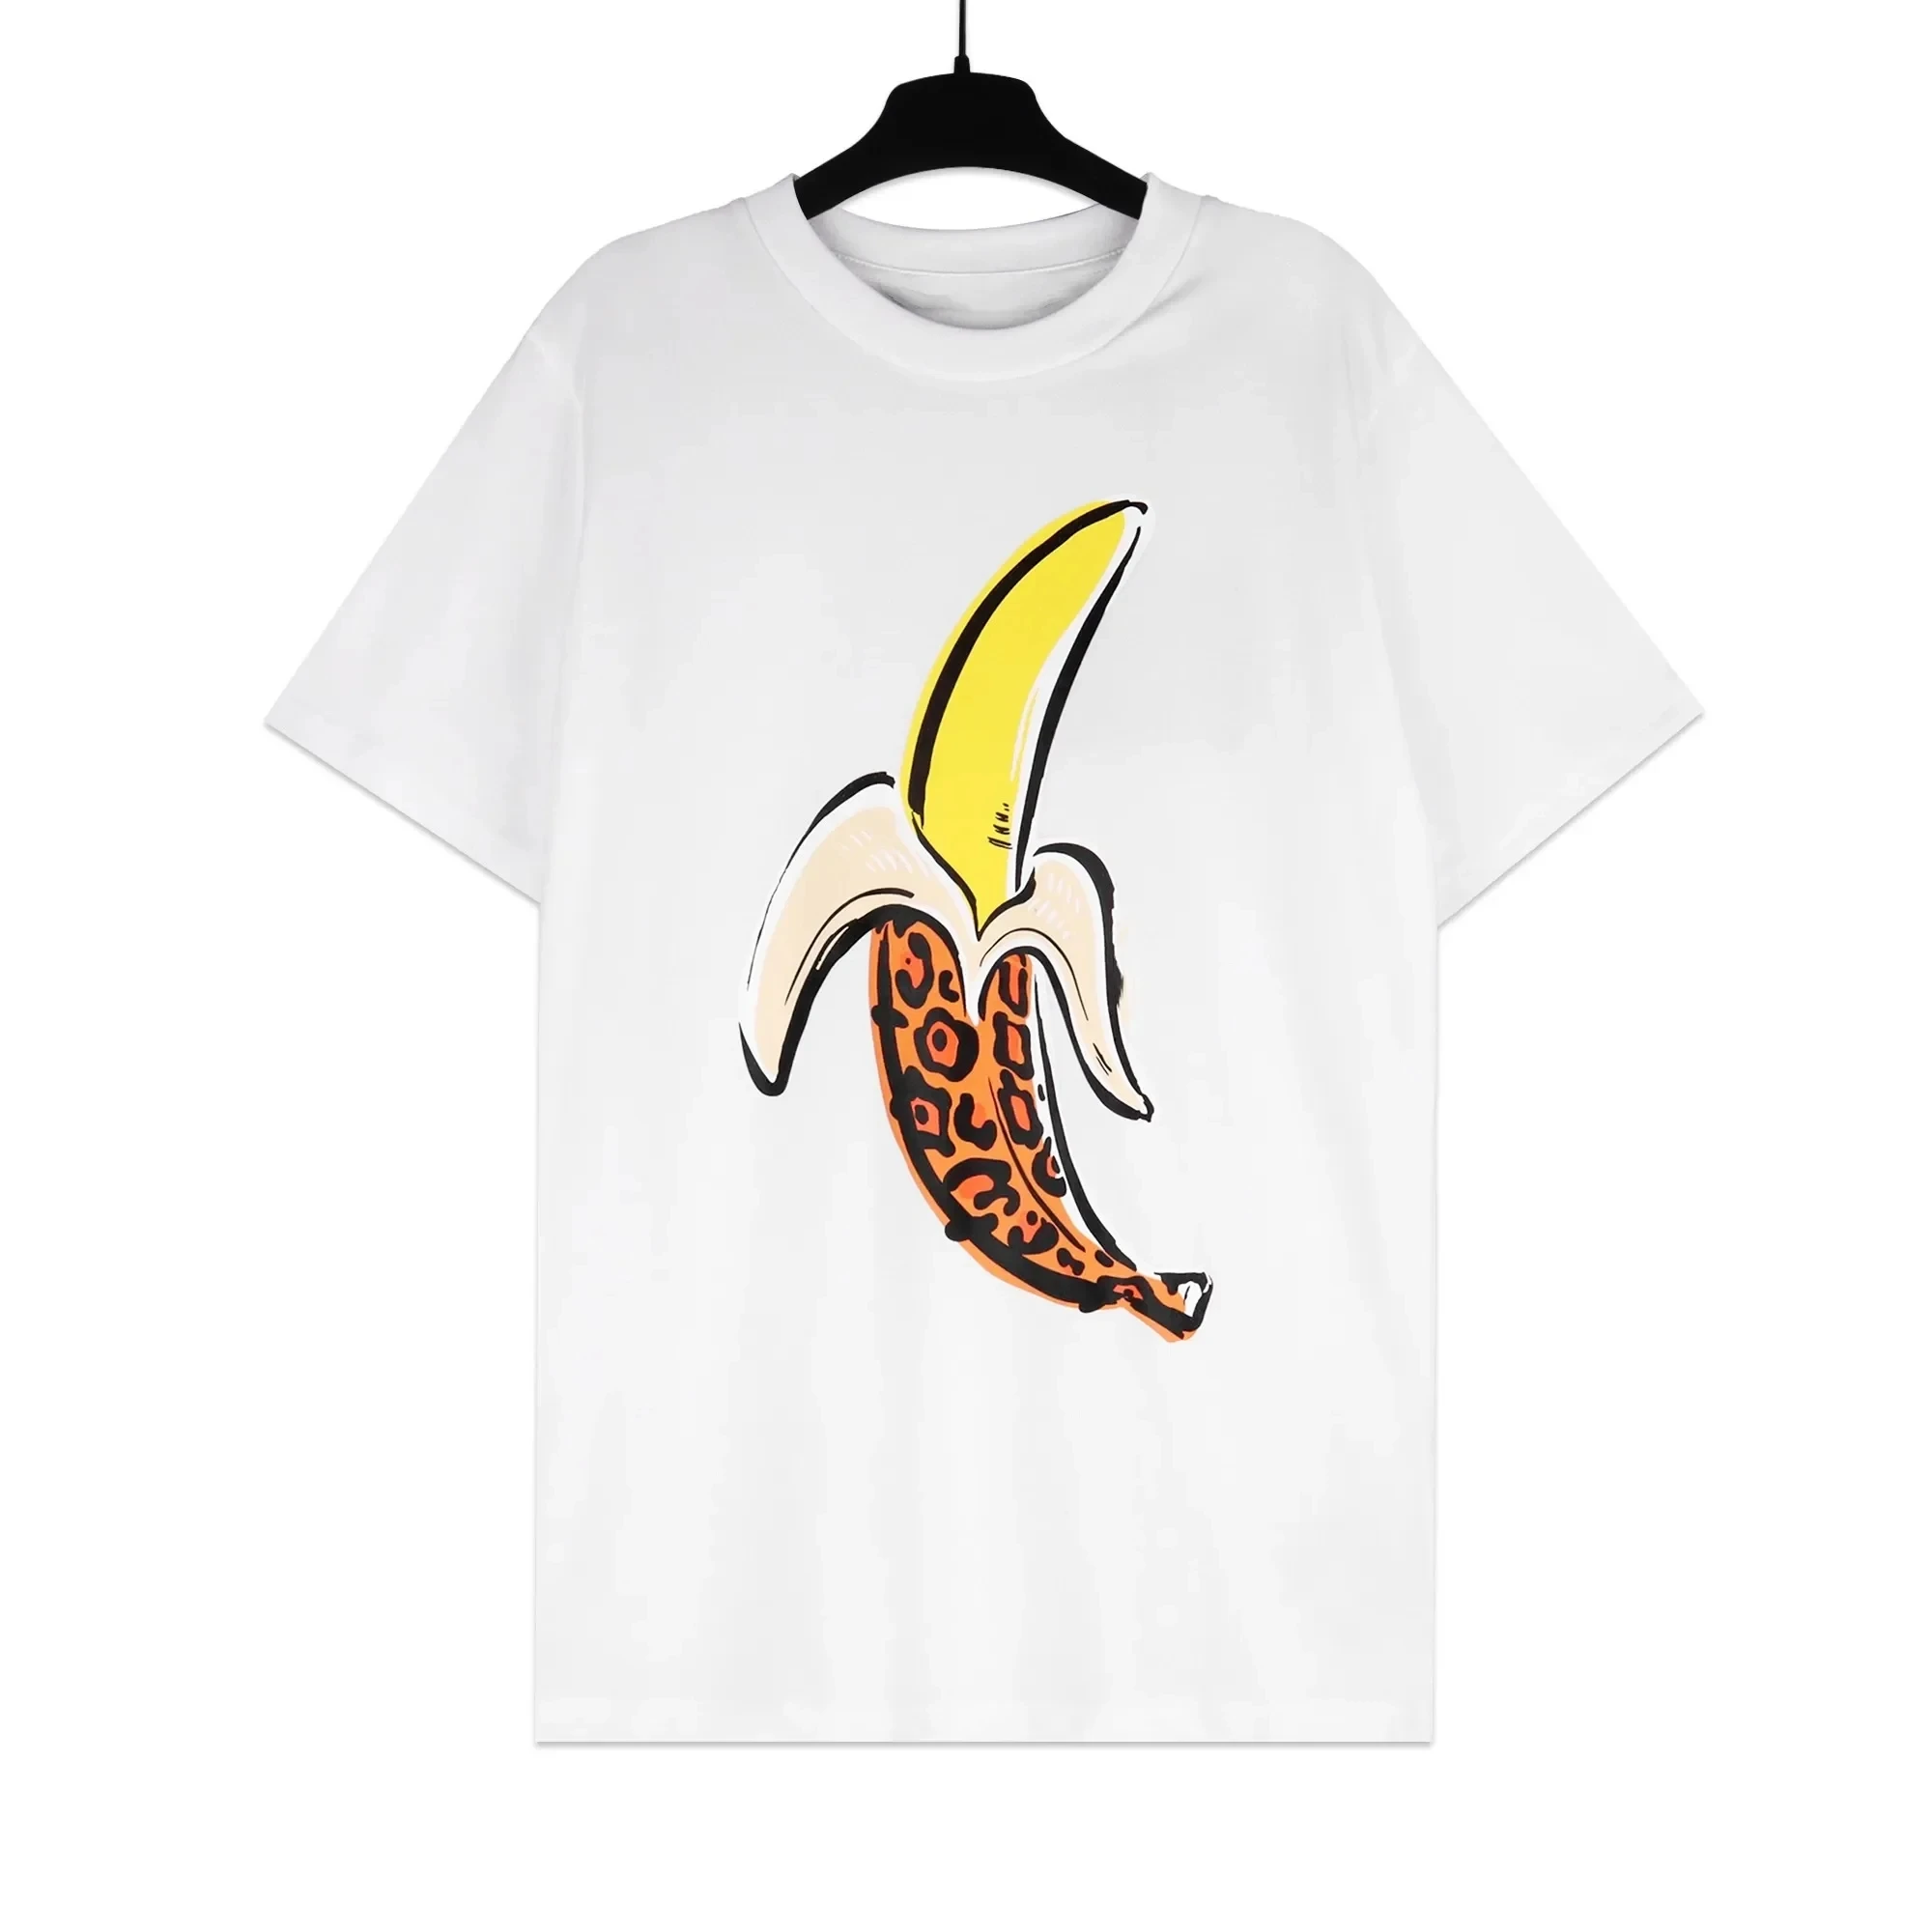 Футболки Angel для мужчин и женщин, футболки с короткими рукавами, футболки оверсайз, банановые молодежные пары, подарок Изображение 2